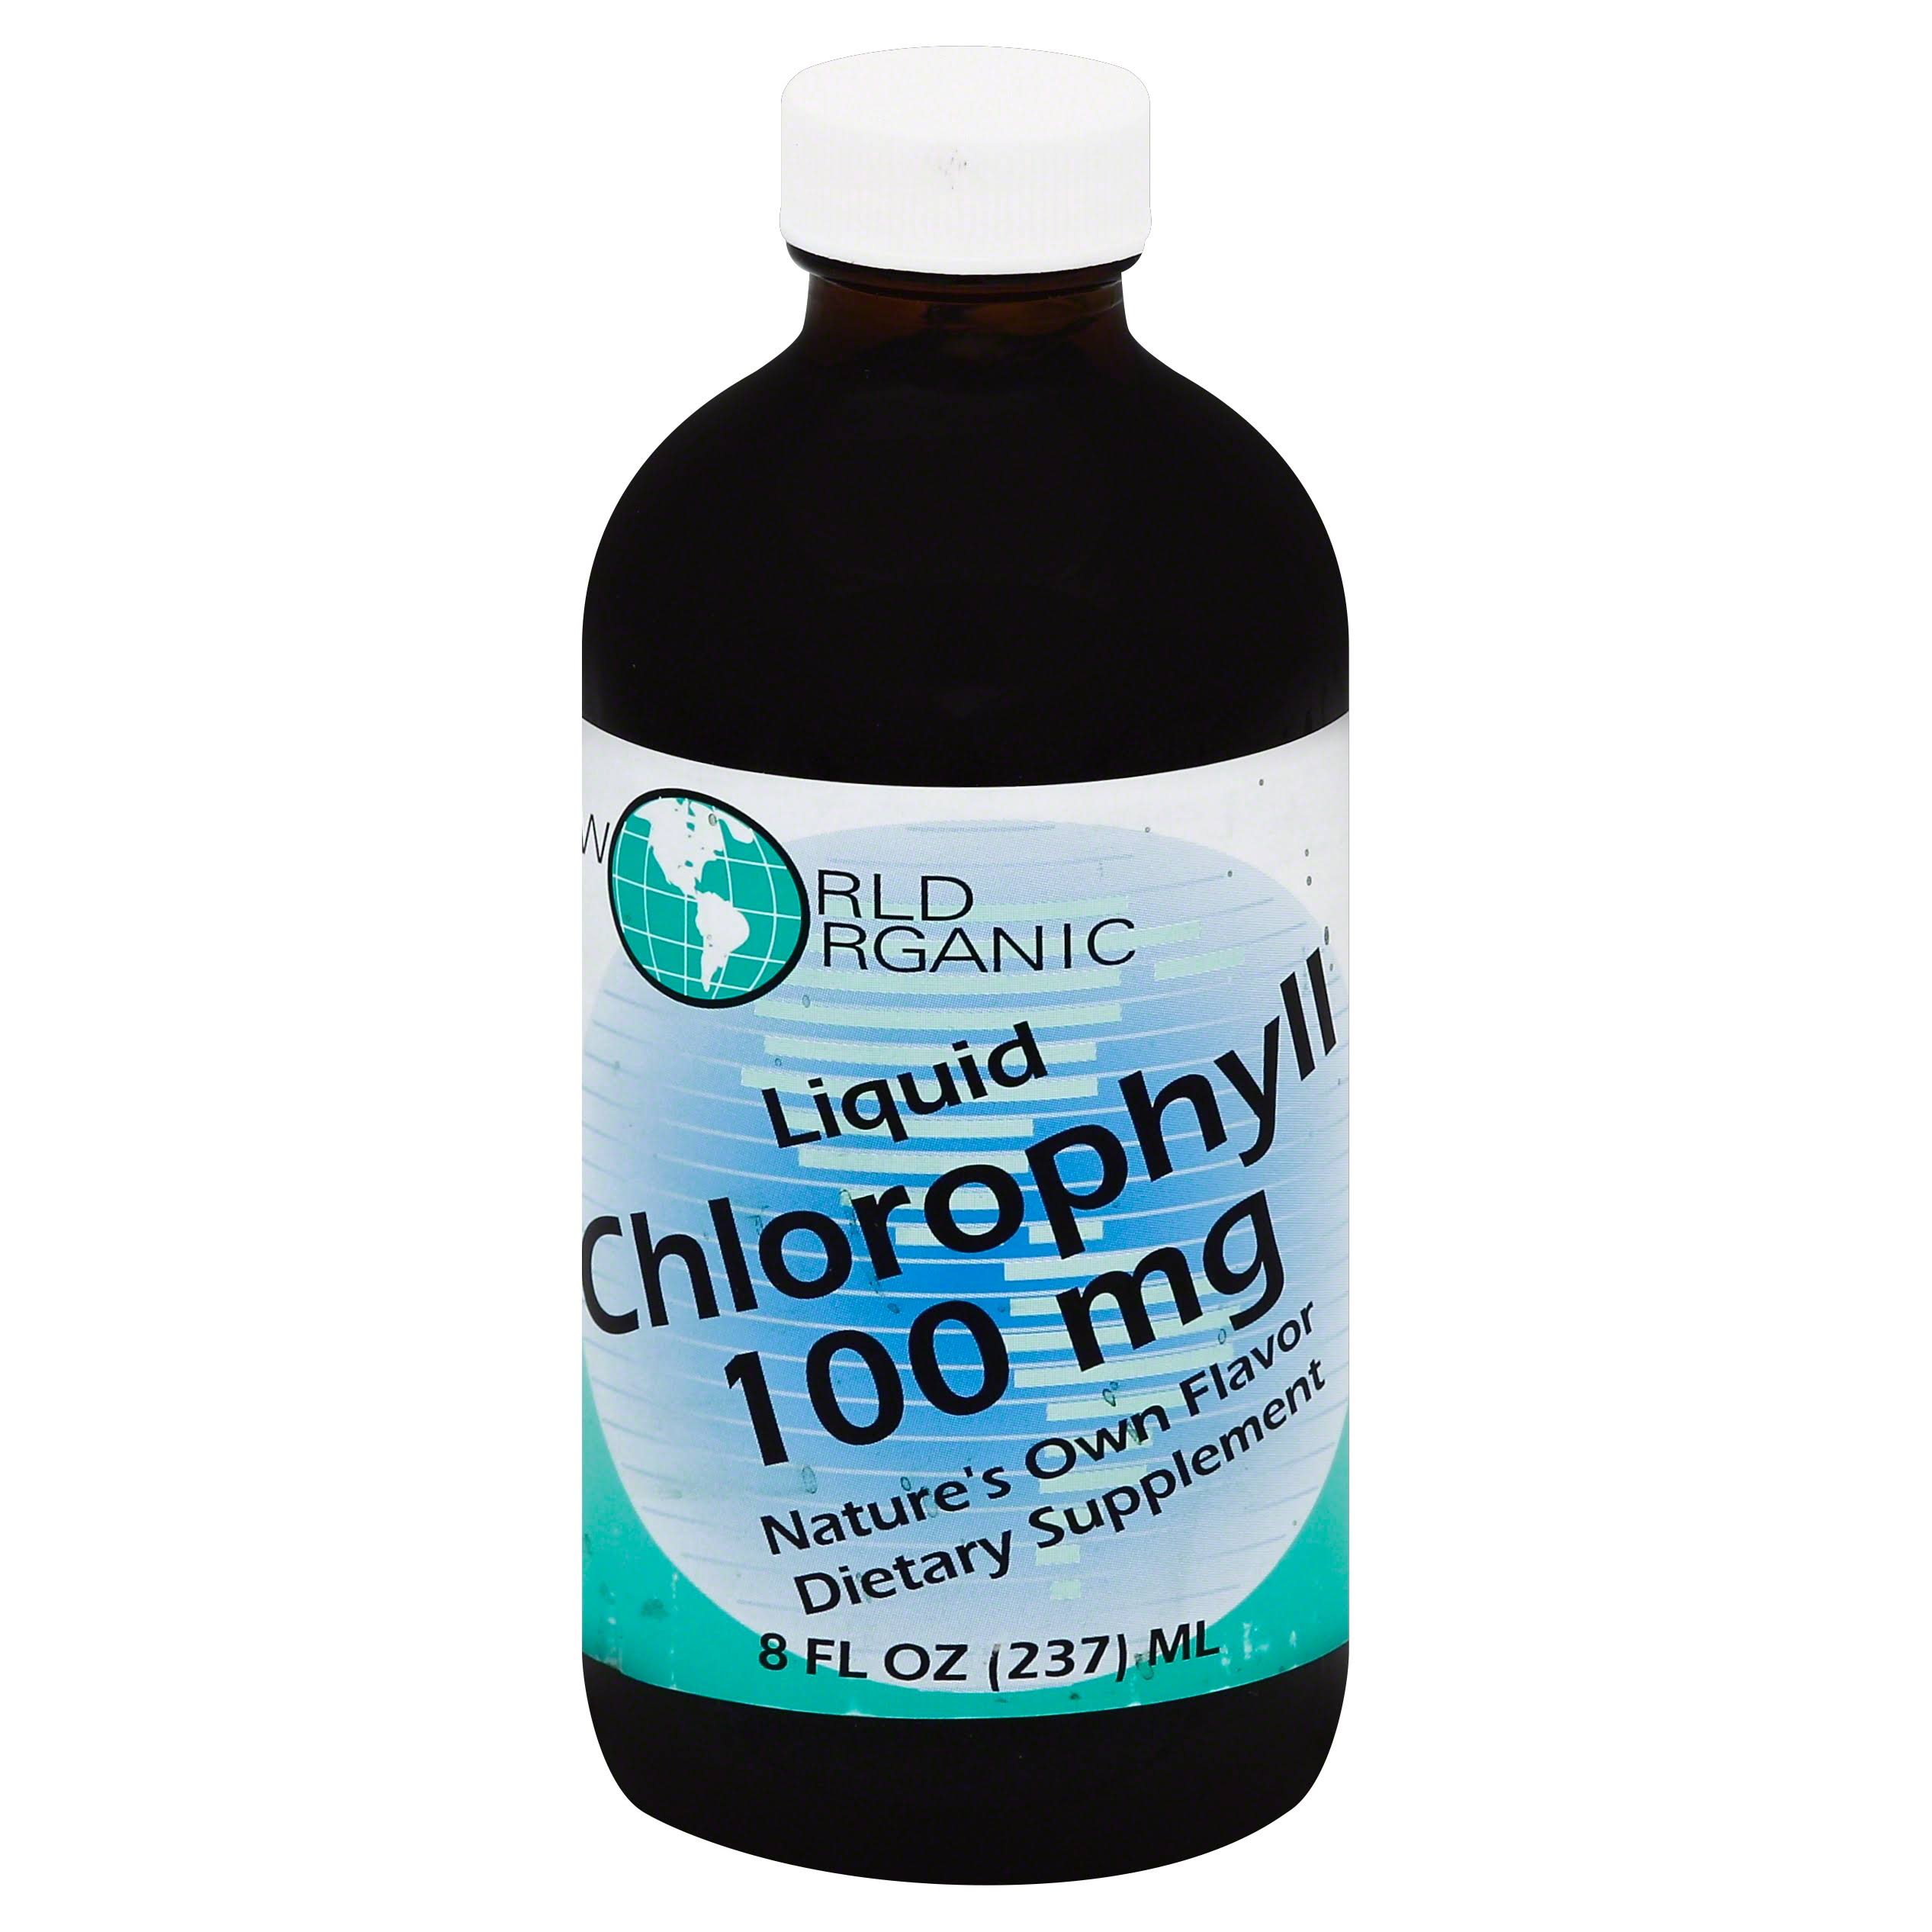 World Organic Liquid Chlorophyll - 100mg